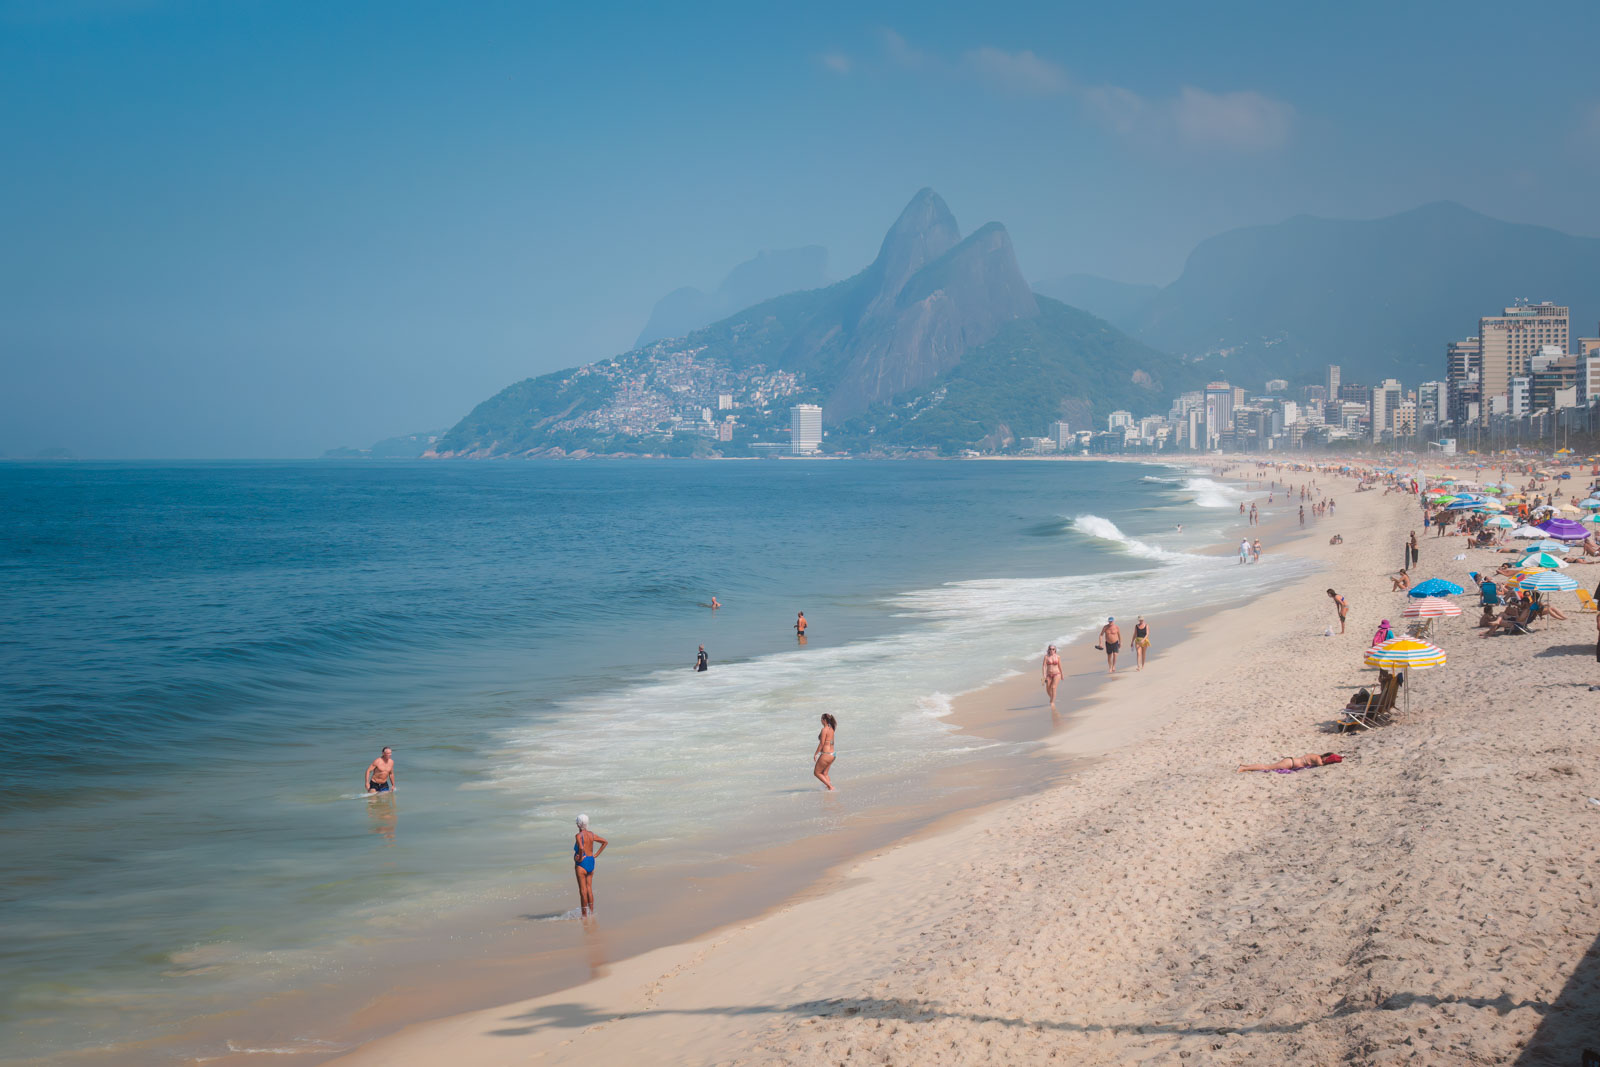 How to get to Rio De Janeiro